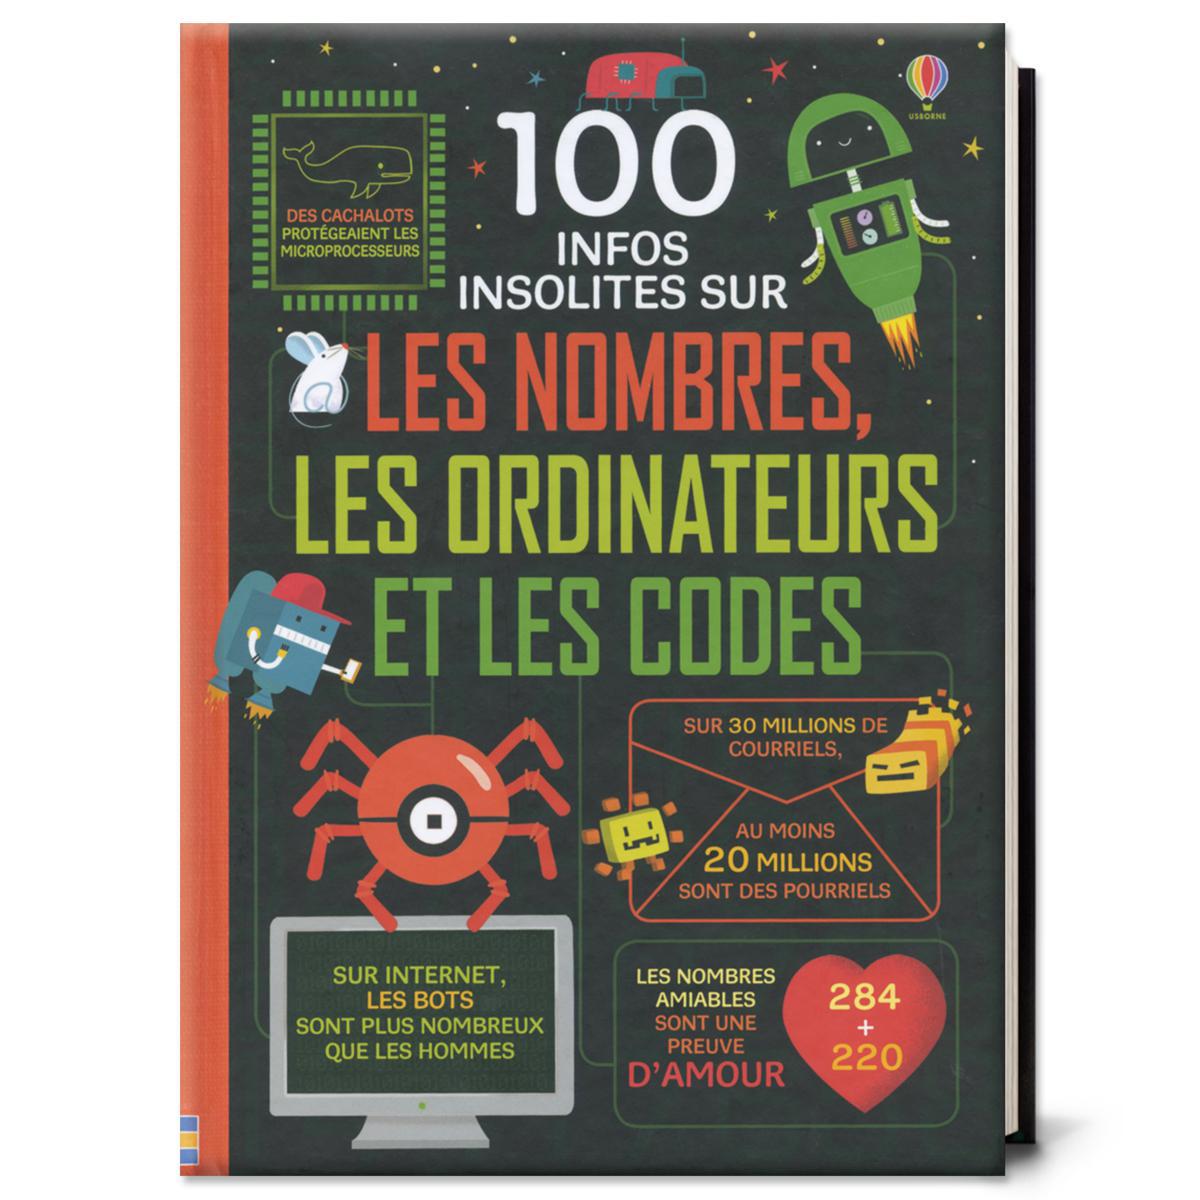  100 infos insolites sur les nombres, les ordinateurs et les codes 